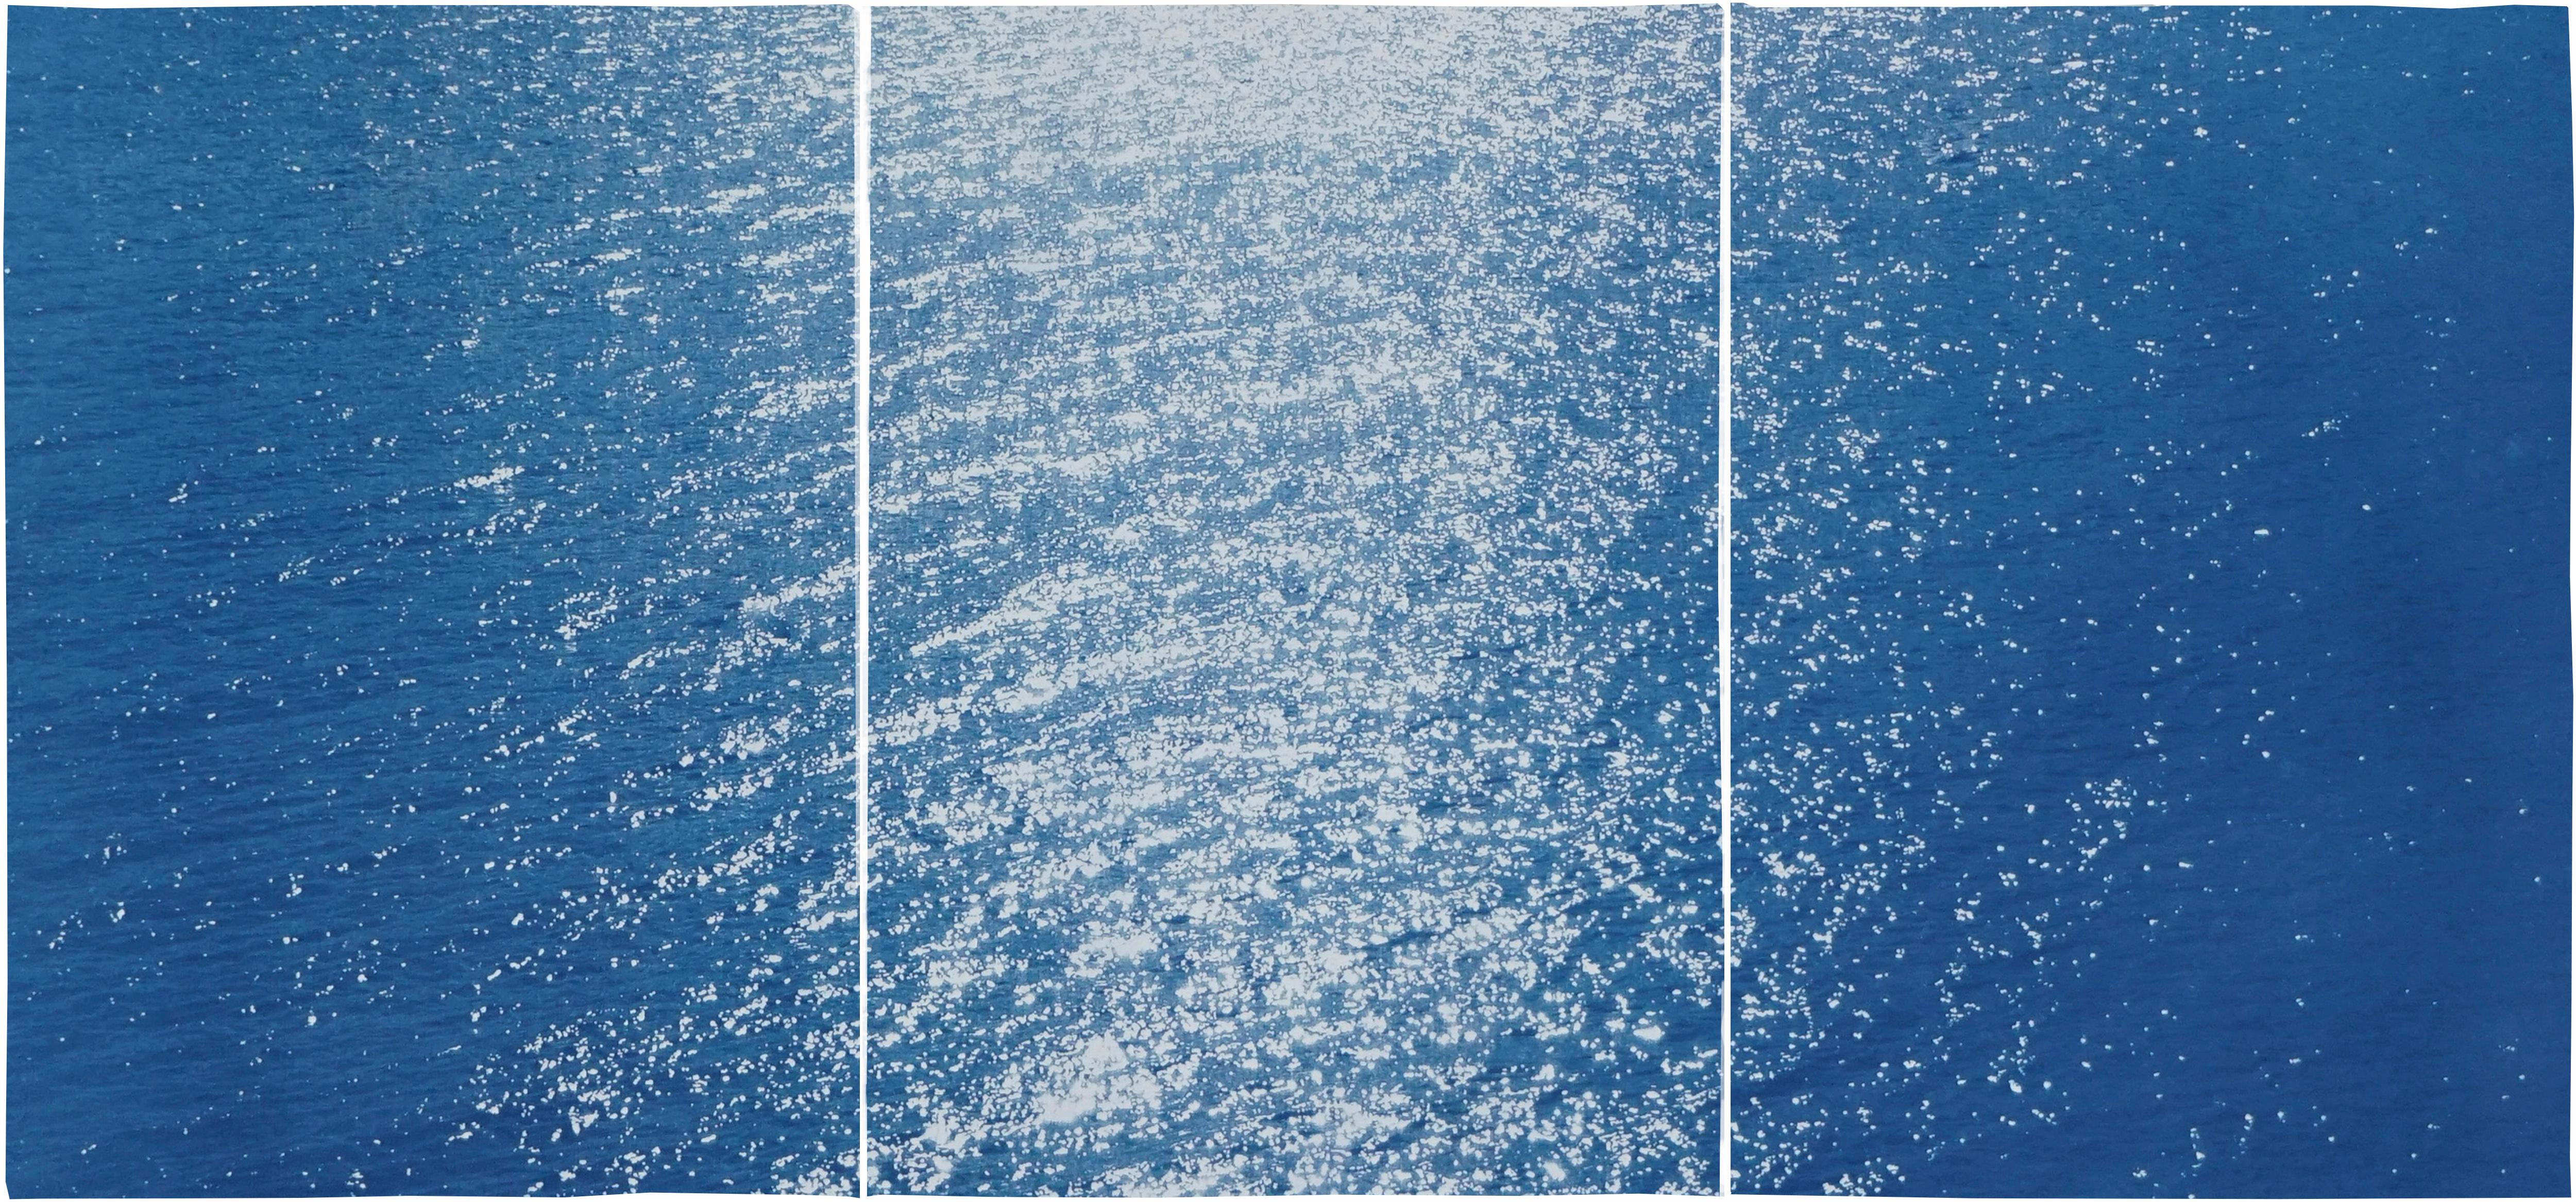 Abstract Print Kind of Cyan - Paysage marin de la côte amalfitaine, Triptyque nautique cyanotype sur papier, baie de Sunrise, bleu